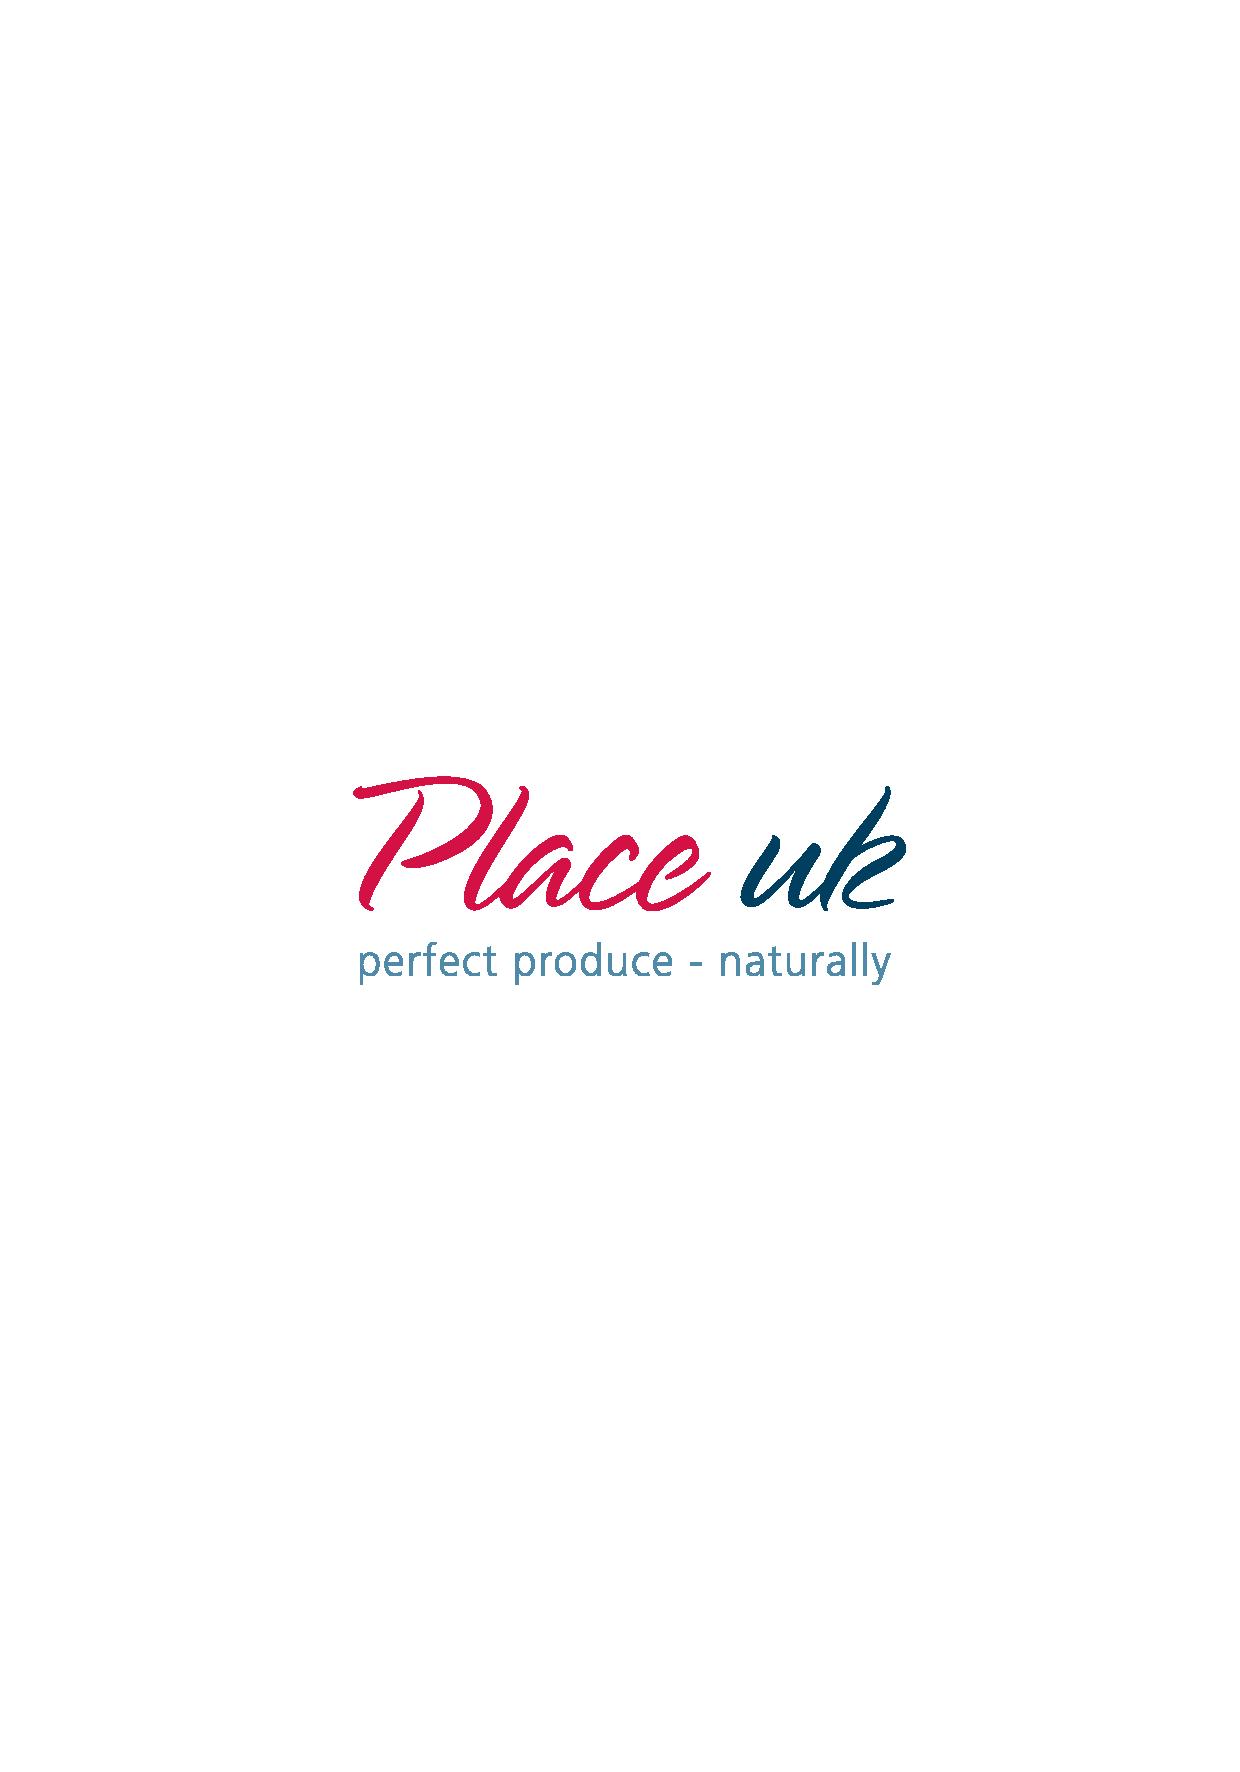 Place UK Ltd